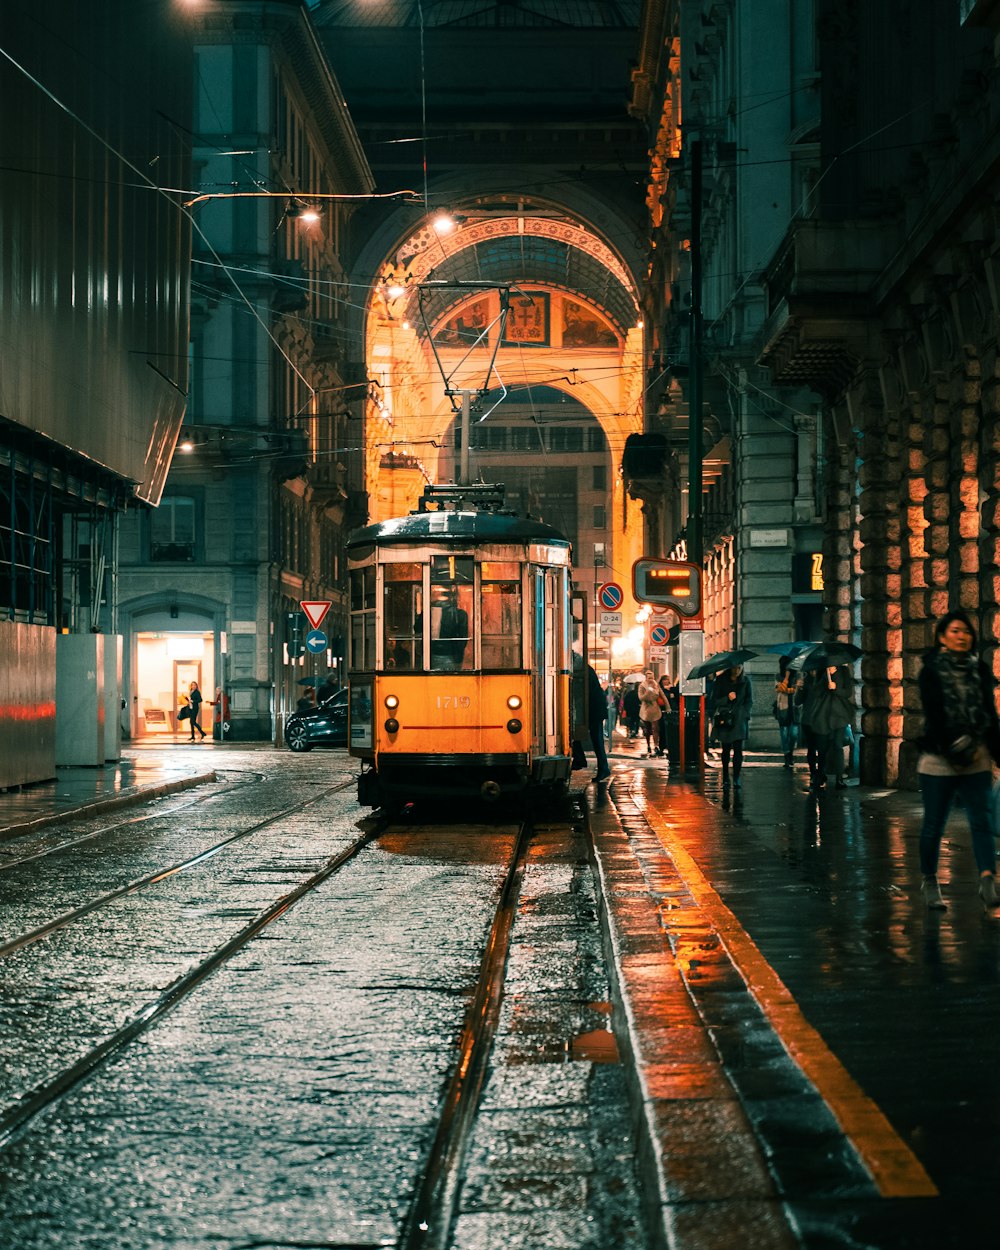 people walking on sidewalk near yellow tram during night time